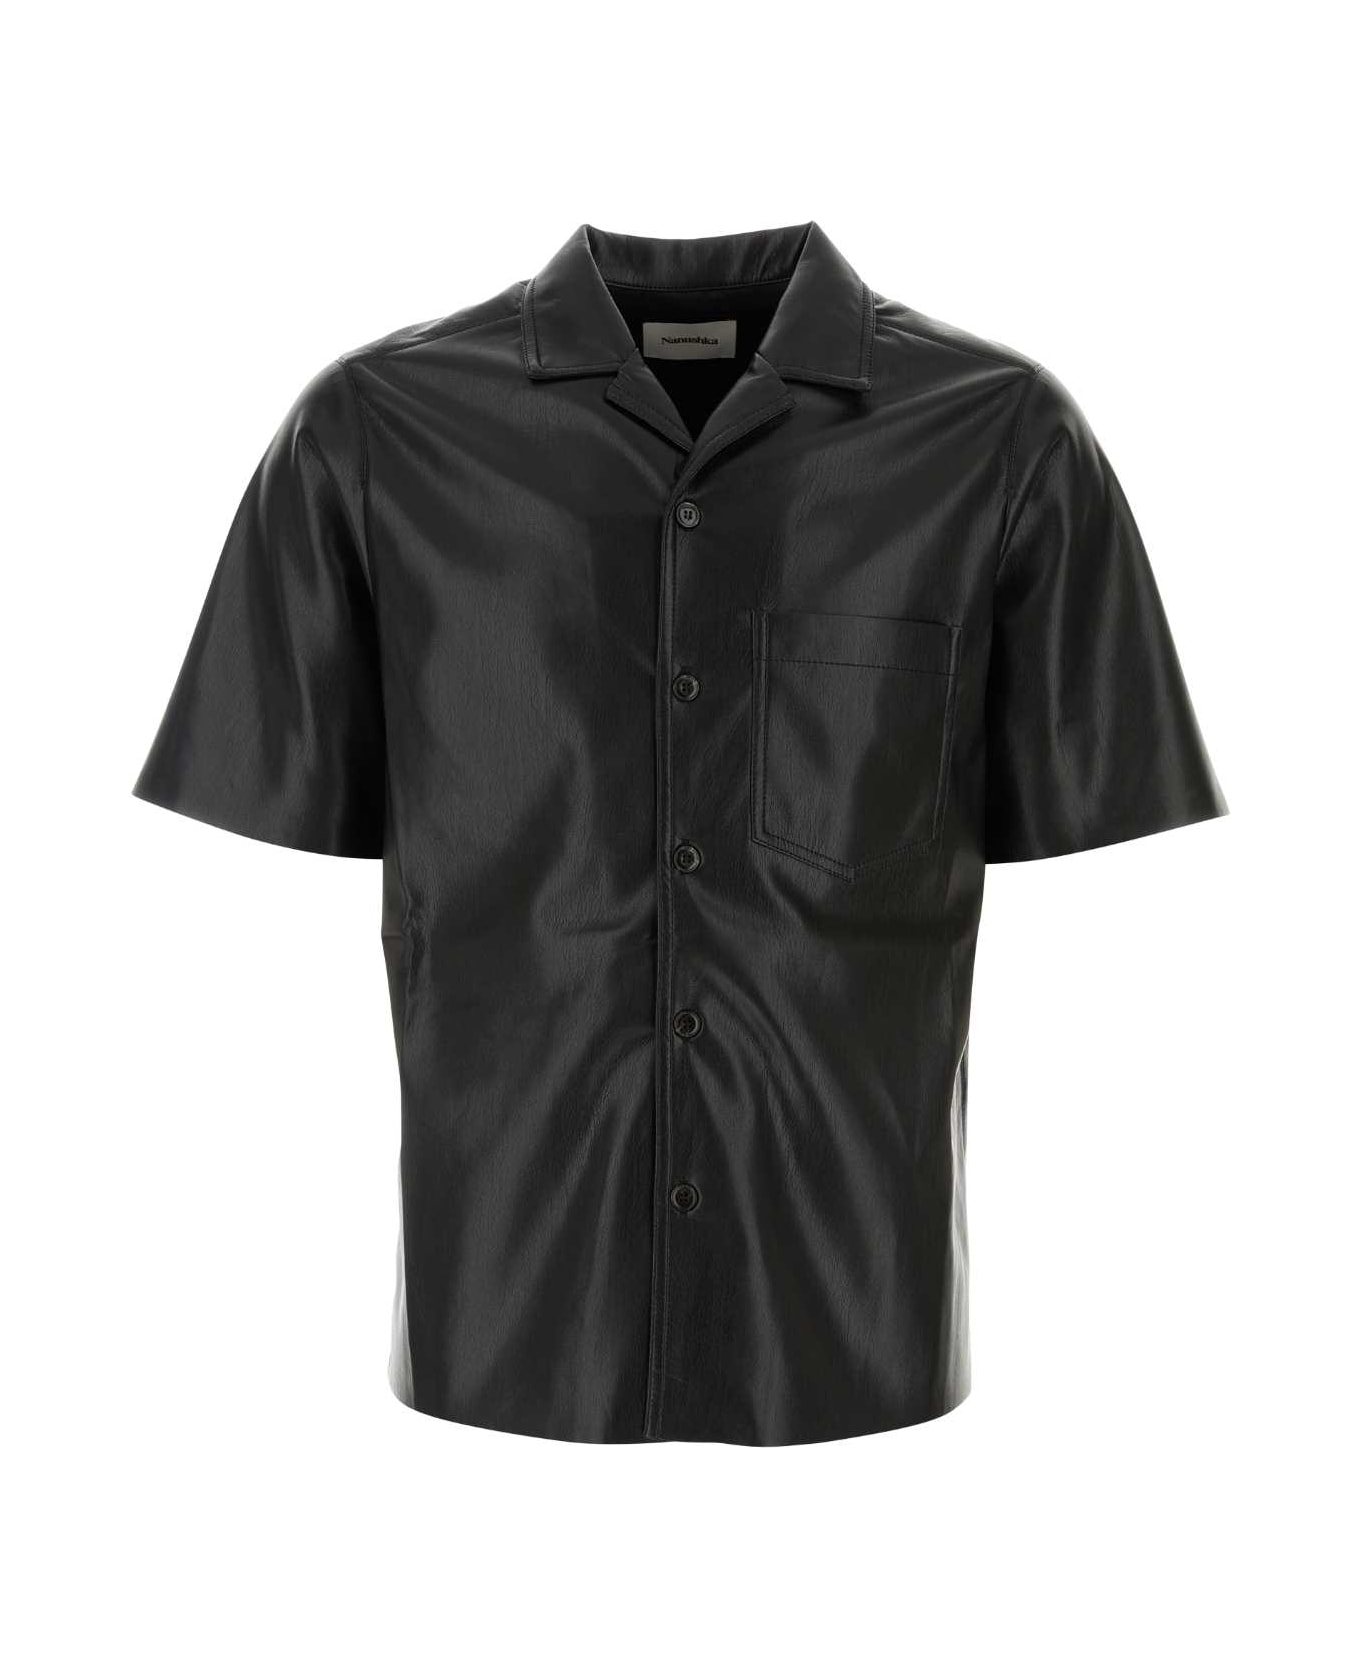 Nanushka Black Synthetic Leather Bodil Shirt - BLACK